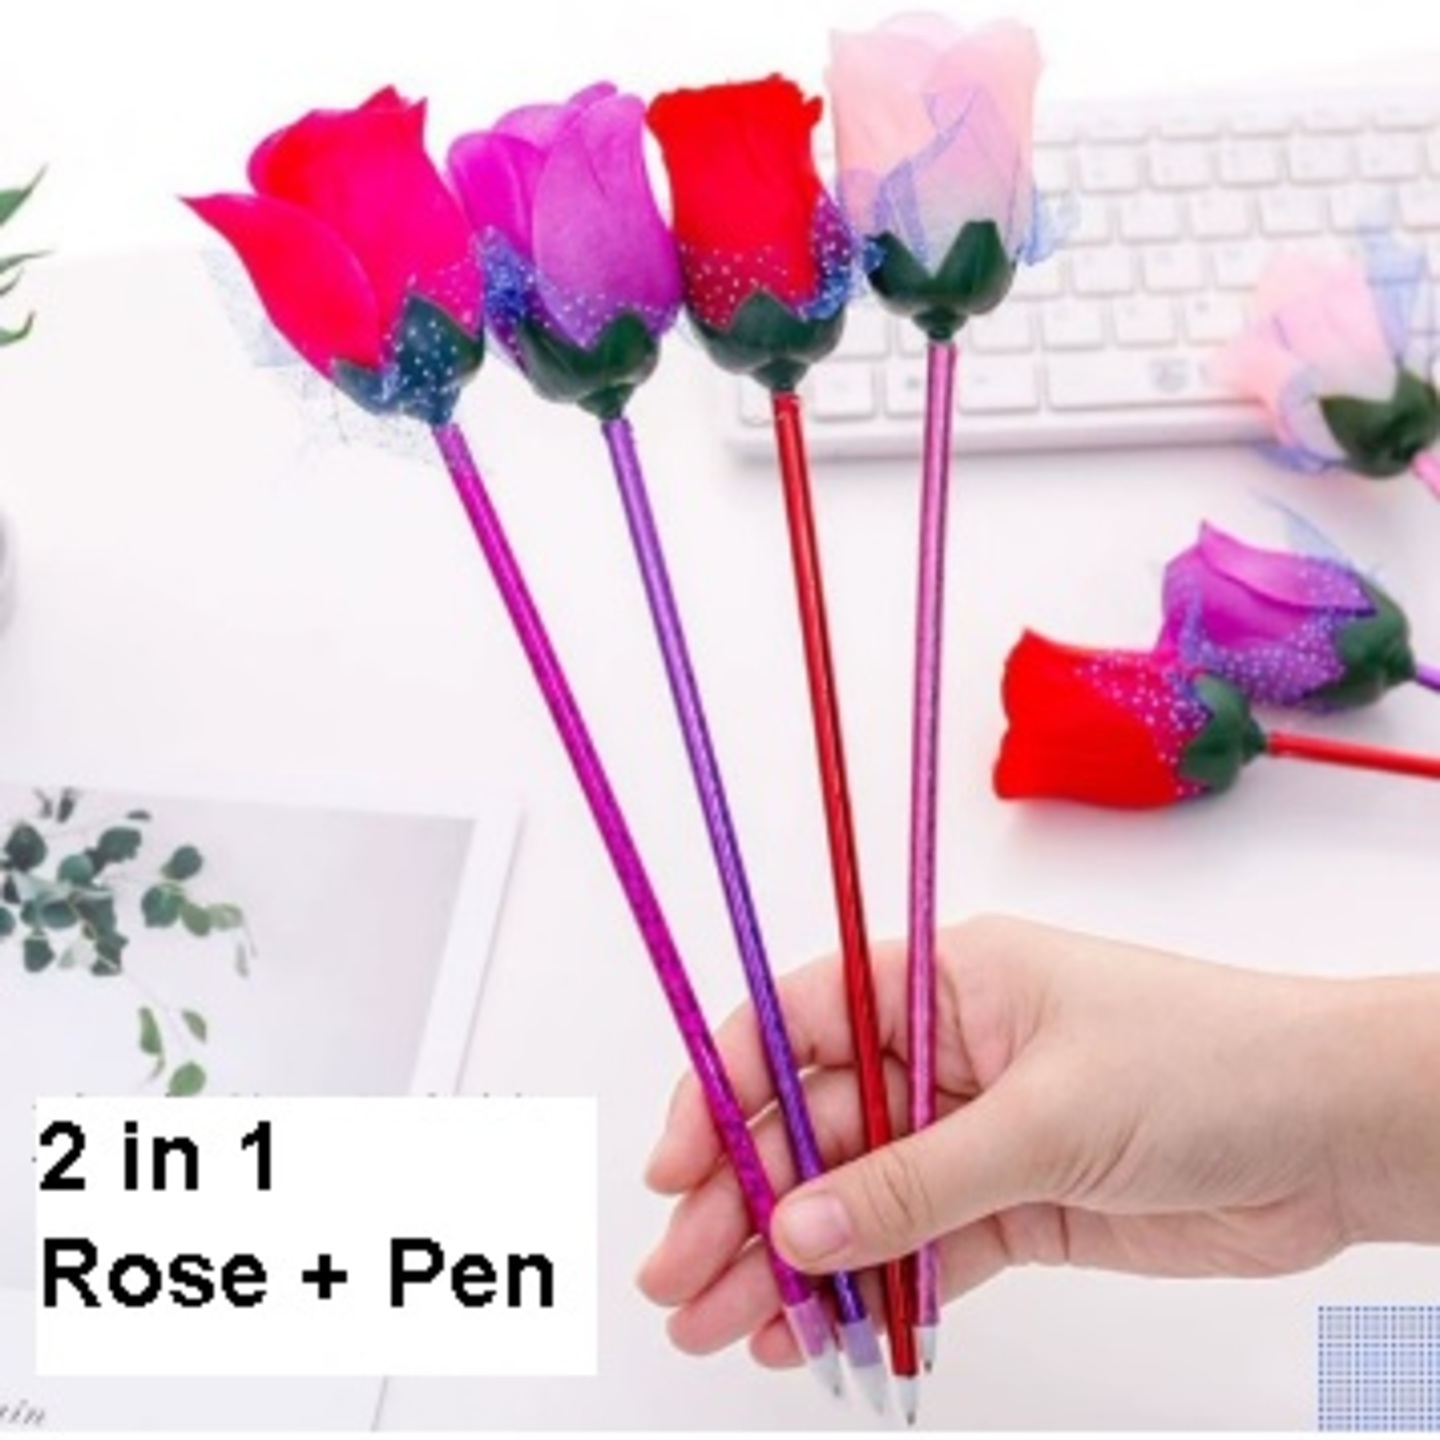 Forever Rose (2 in 1 Rose + Pen)